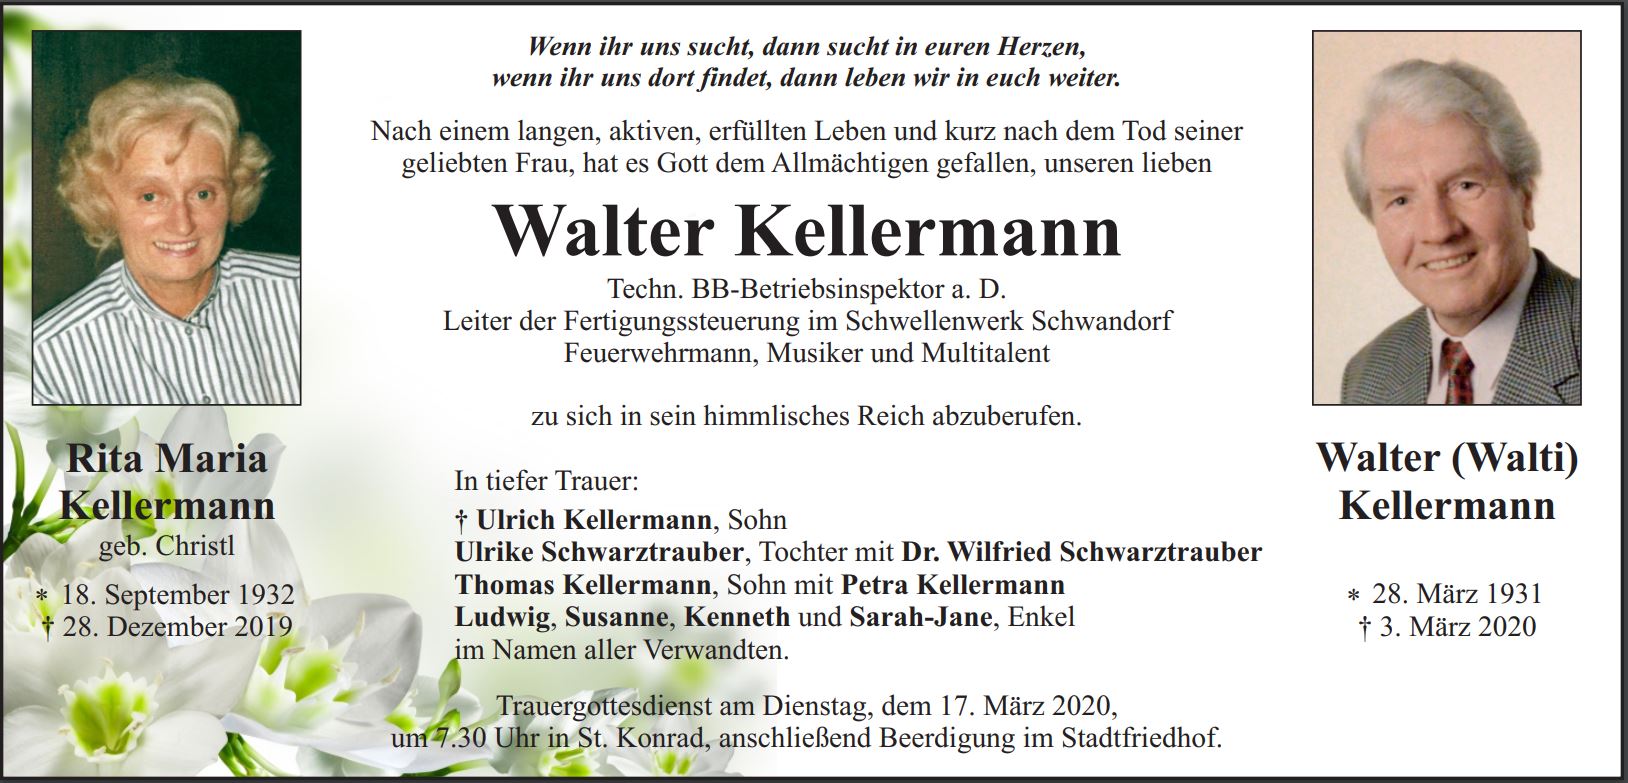 Traueranzeige Walter Kellermann, Weiden